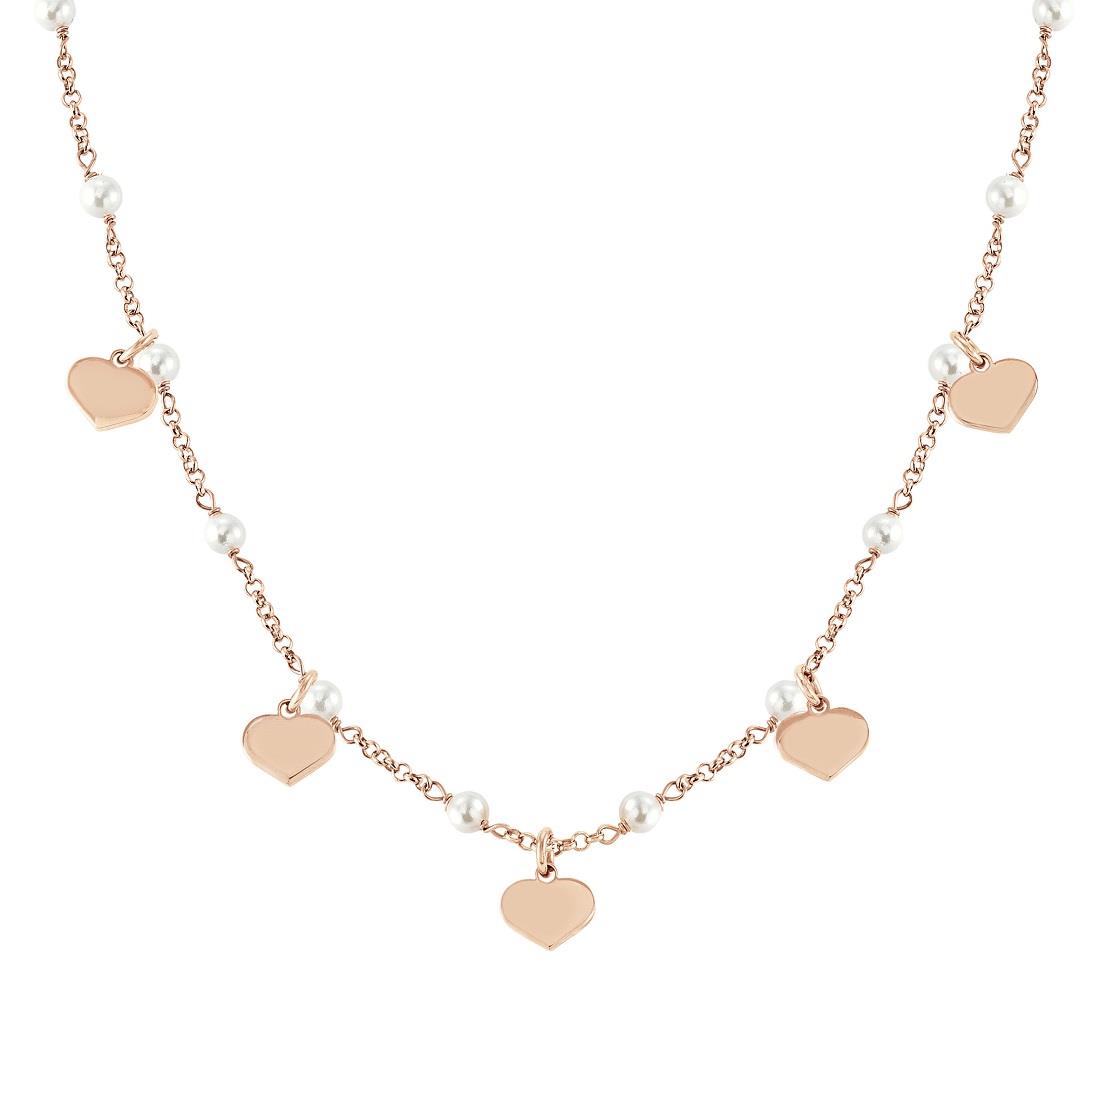 Collana in acciaio e argento con perle e ciondoli cuore - NOMINATION